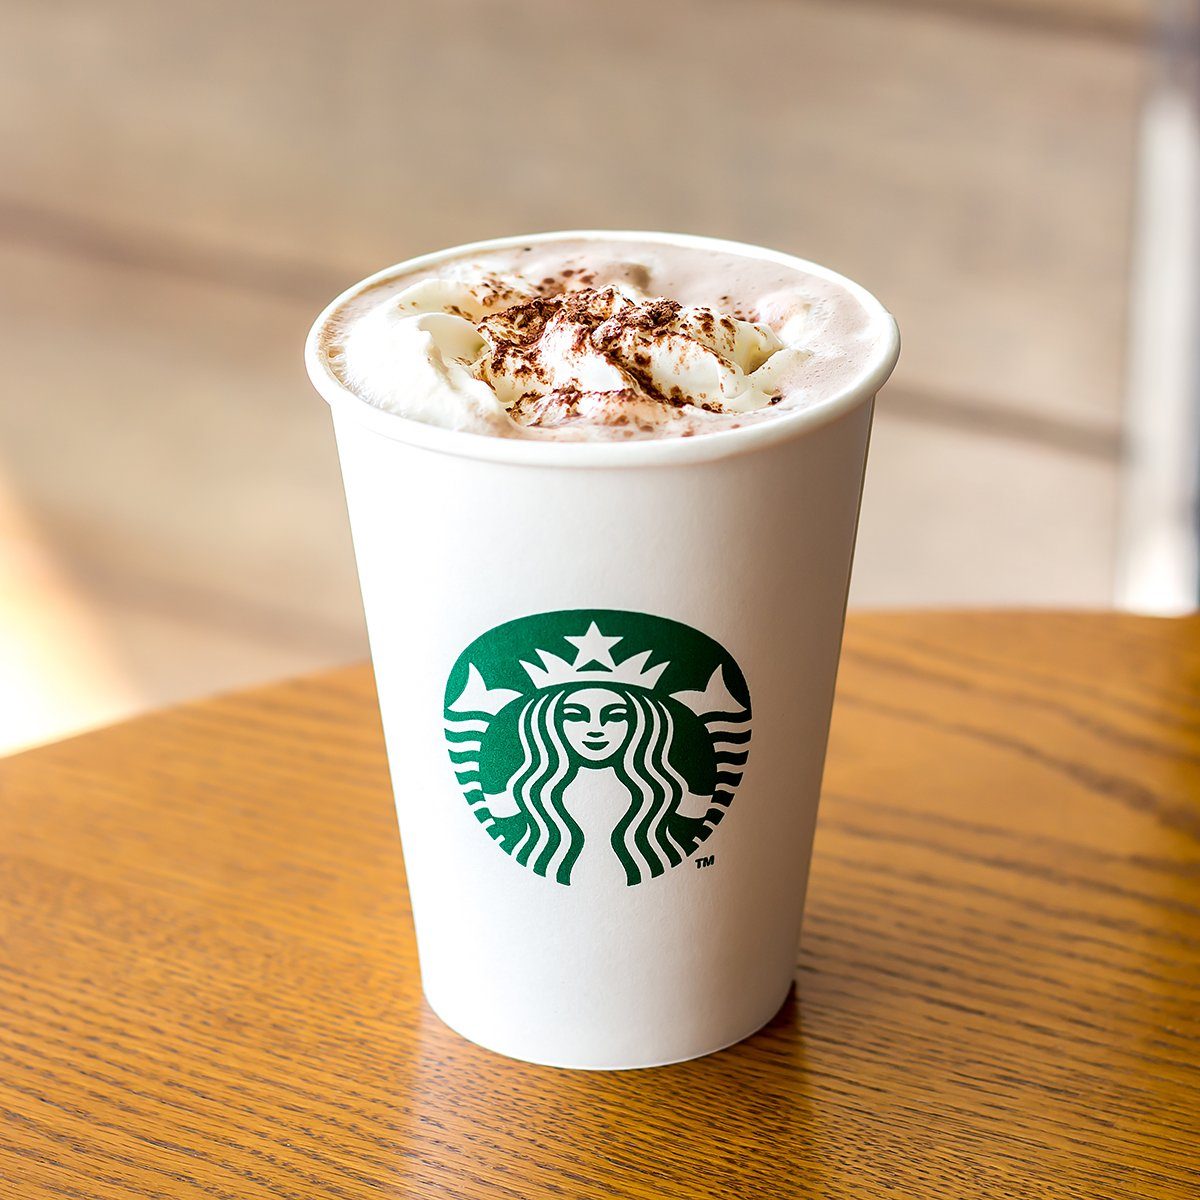 Healthy Starbucks Drinks That Taste Indulgent | Reader's Digest